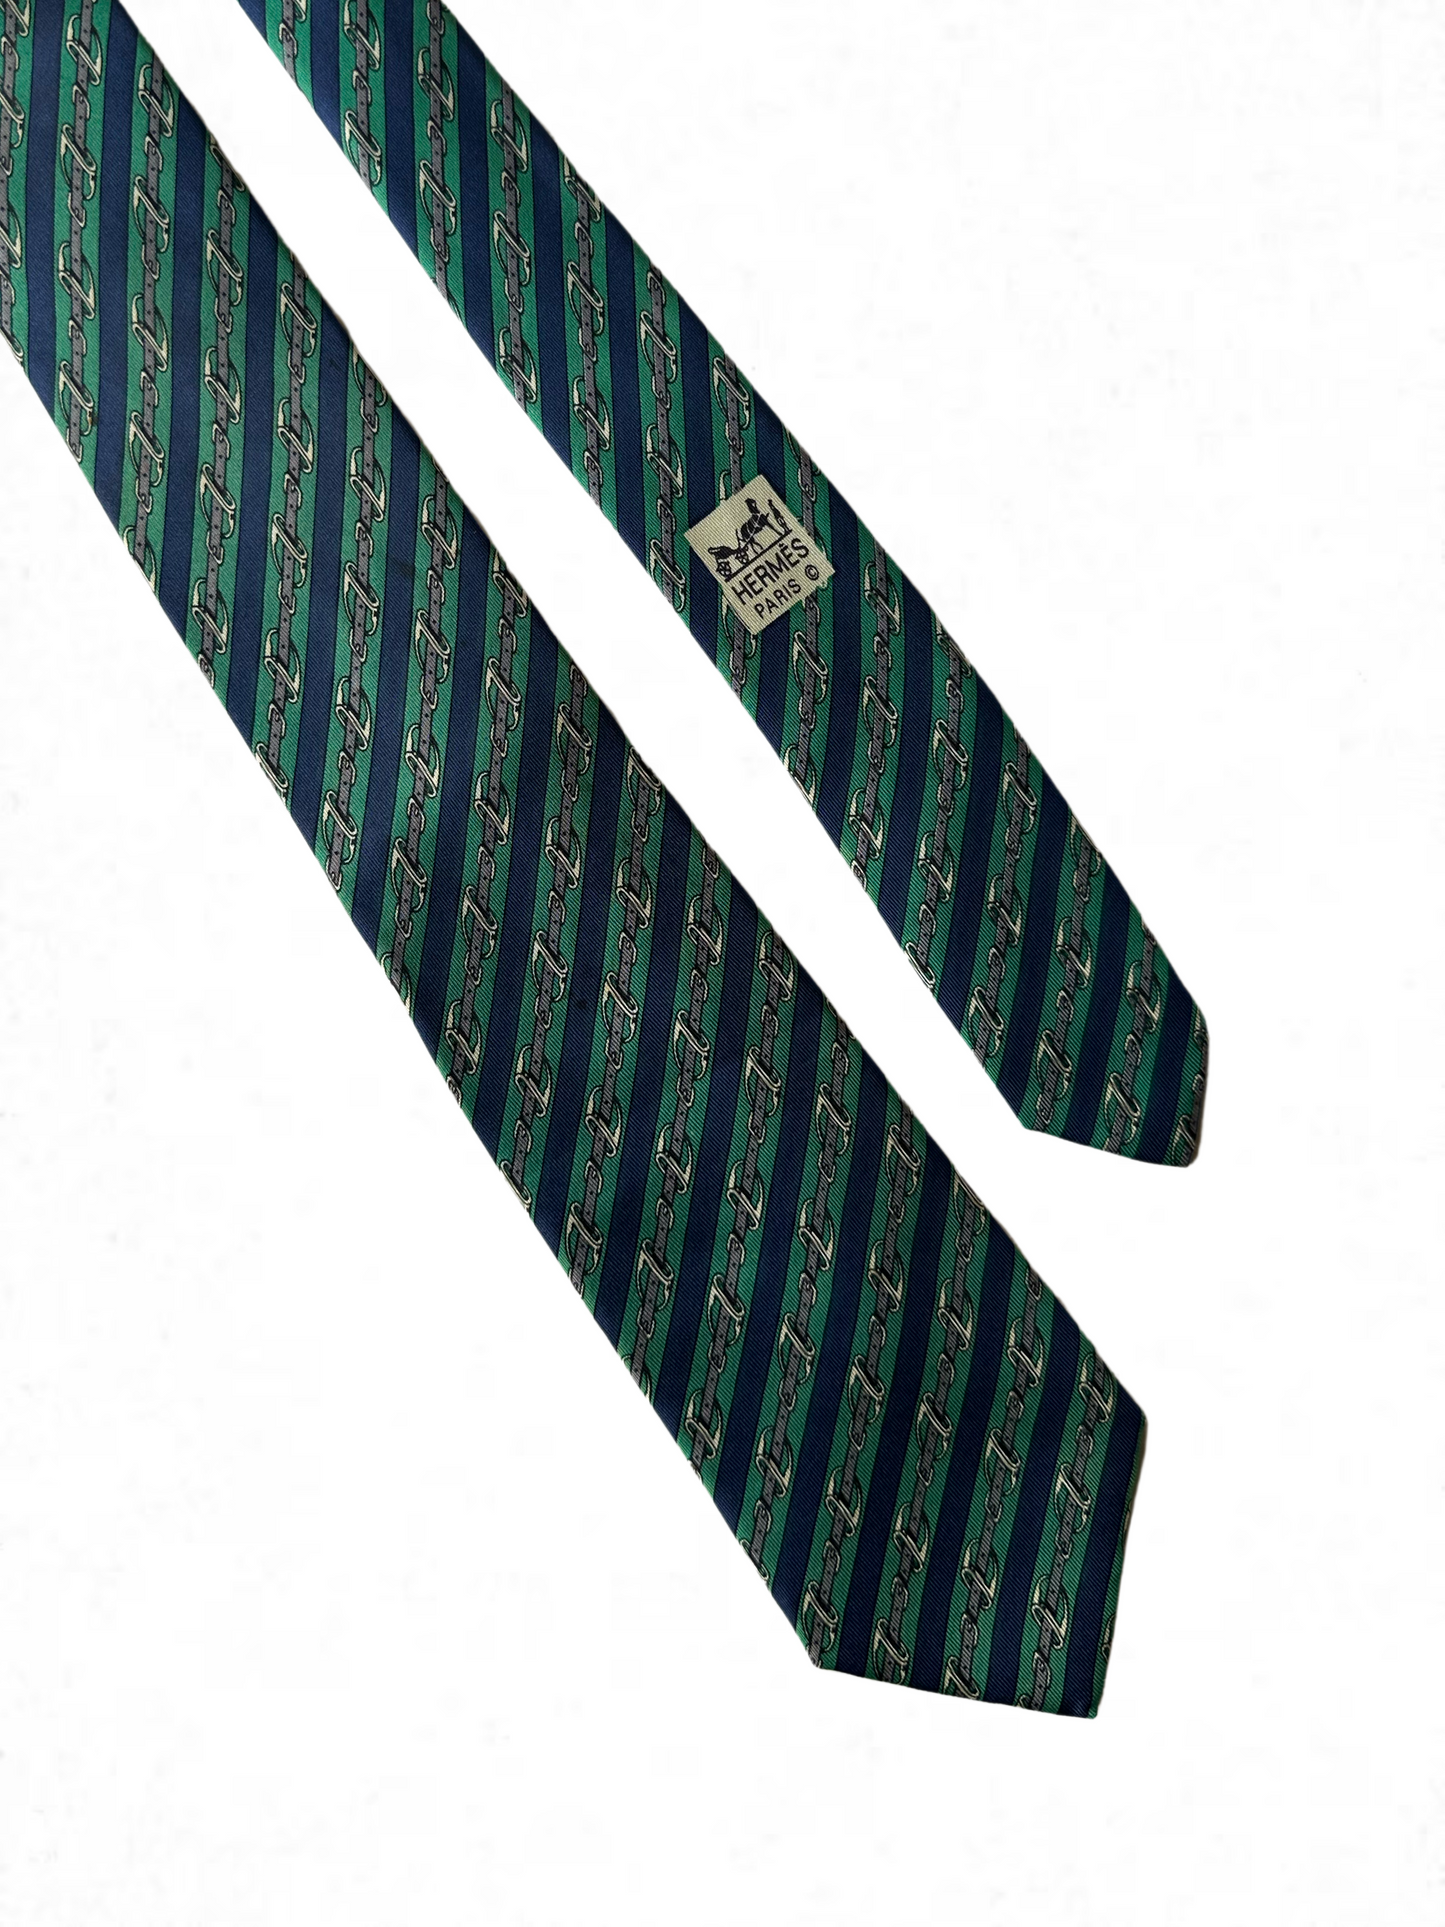 Corbata vintage Hermes